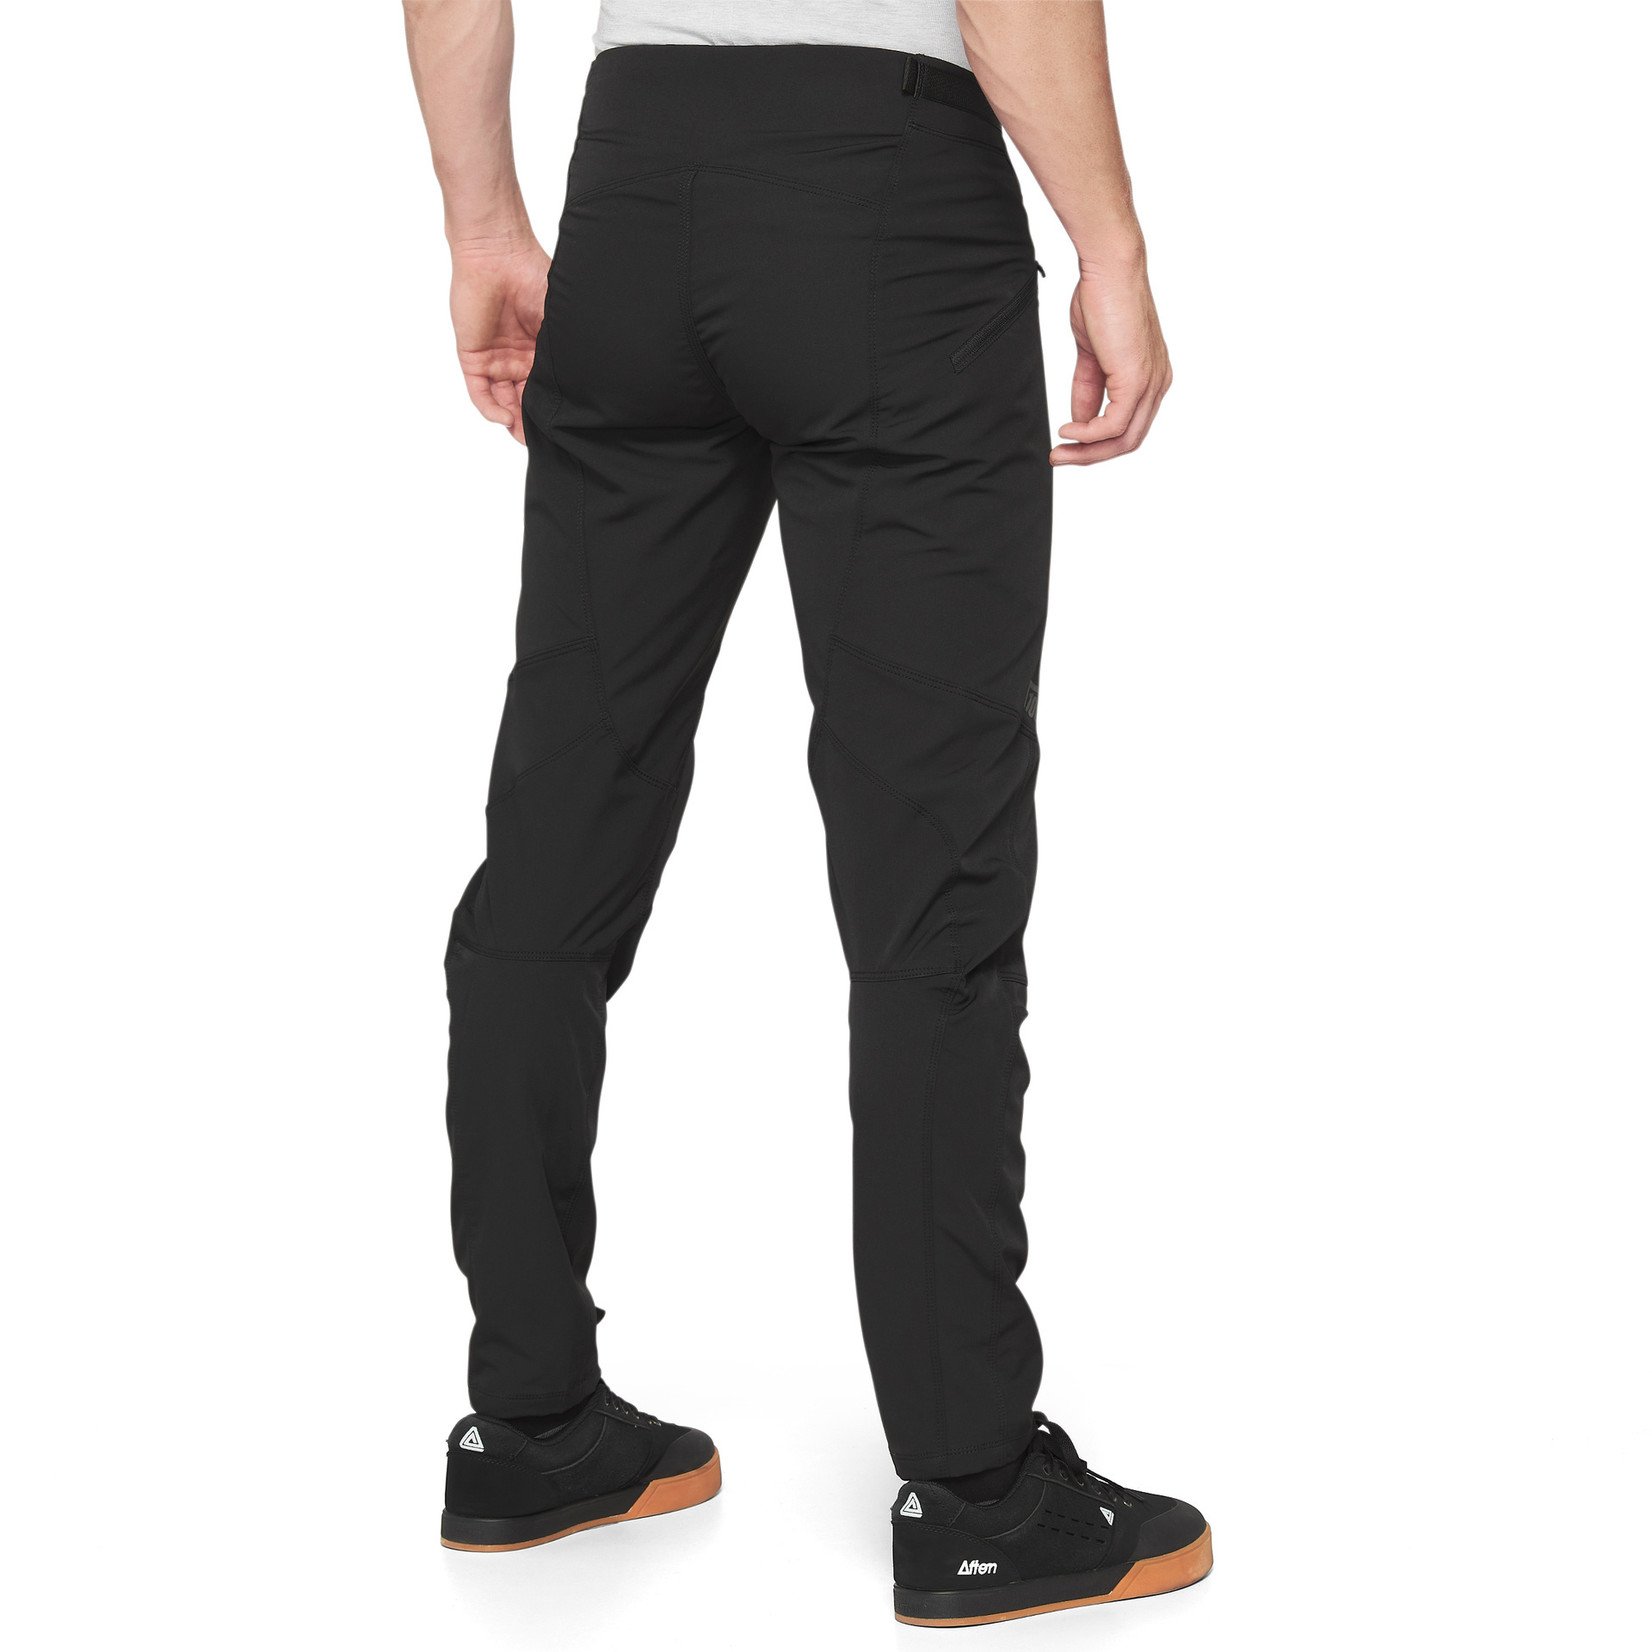 100% Airmatic Bike Gear Men's Pants - Black